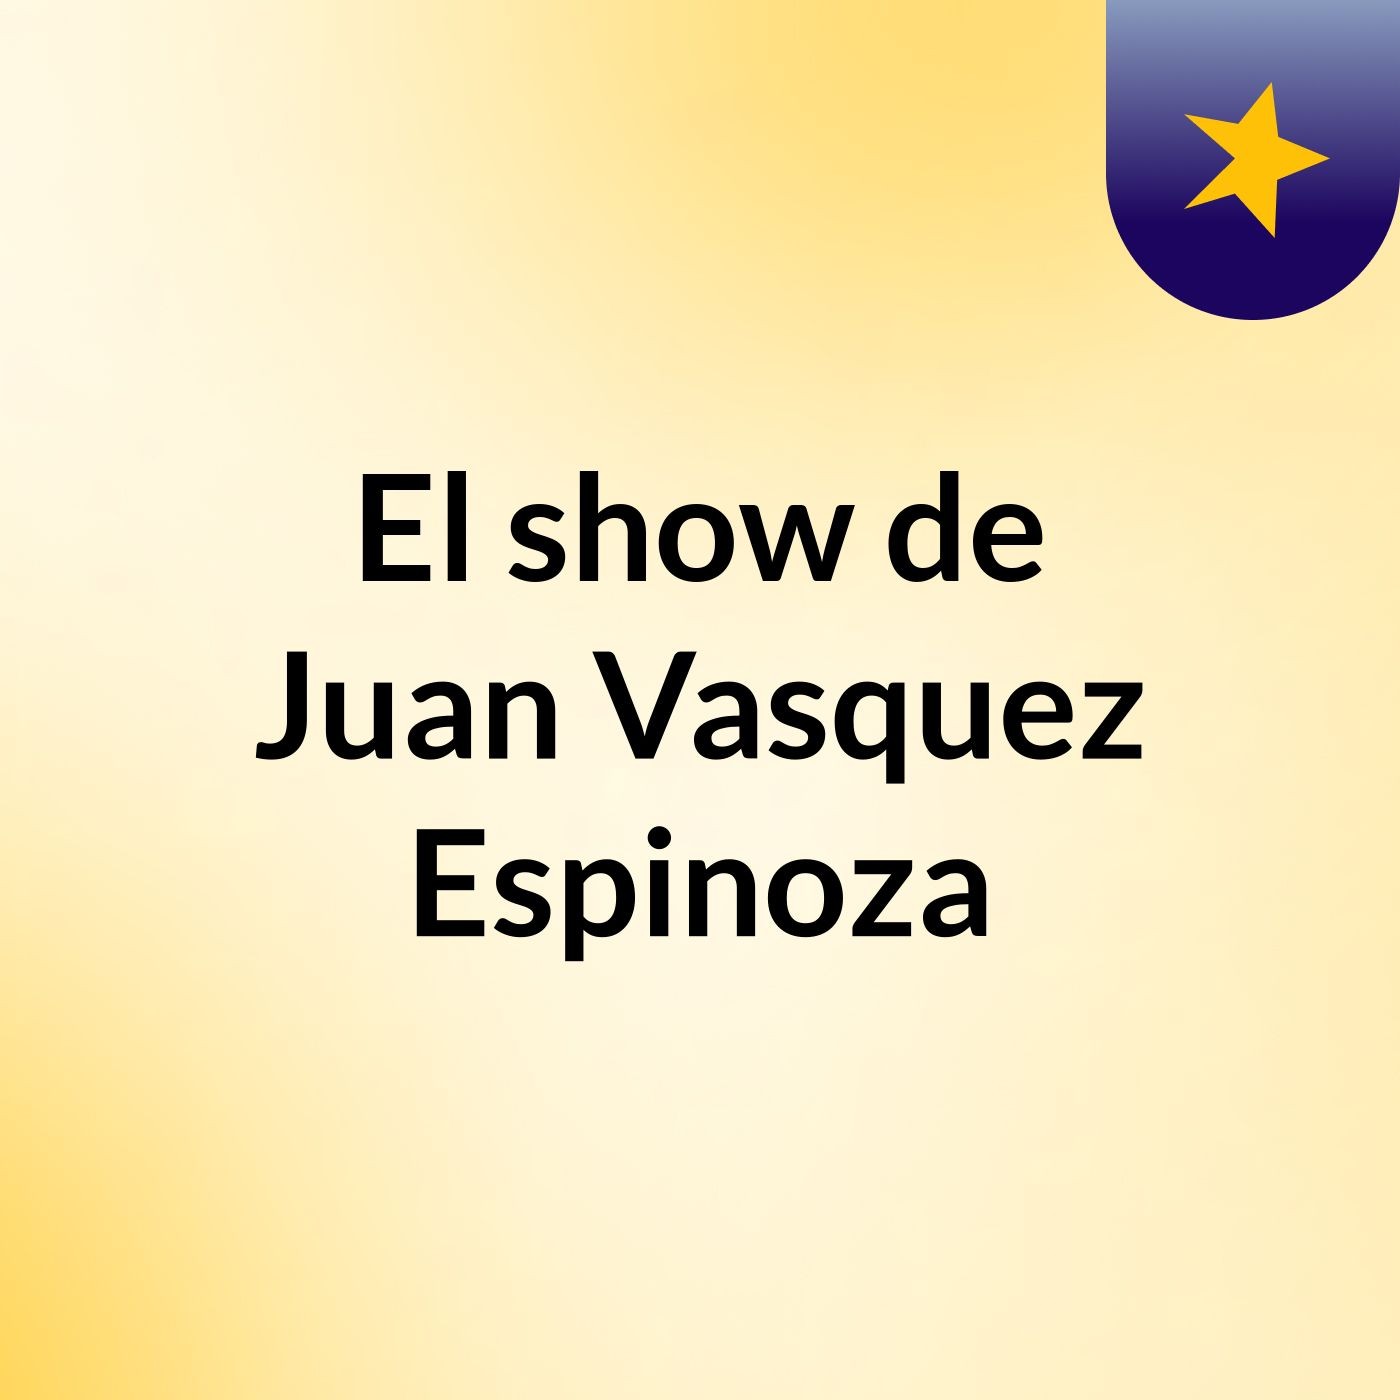 El show de Juan Vasquez Espinoza